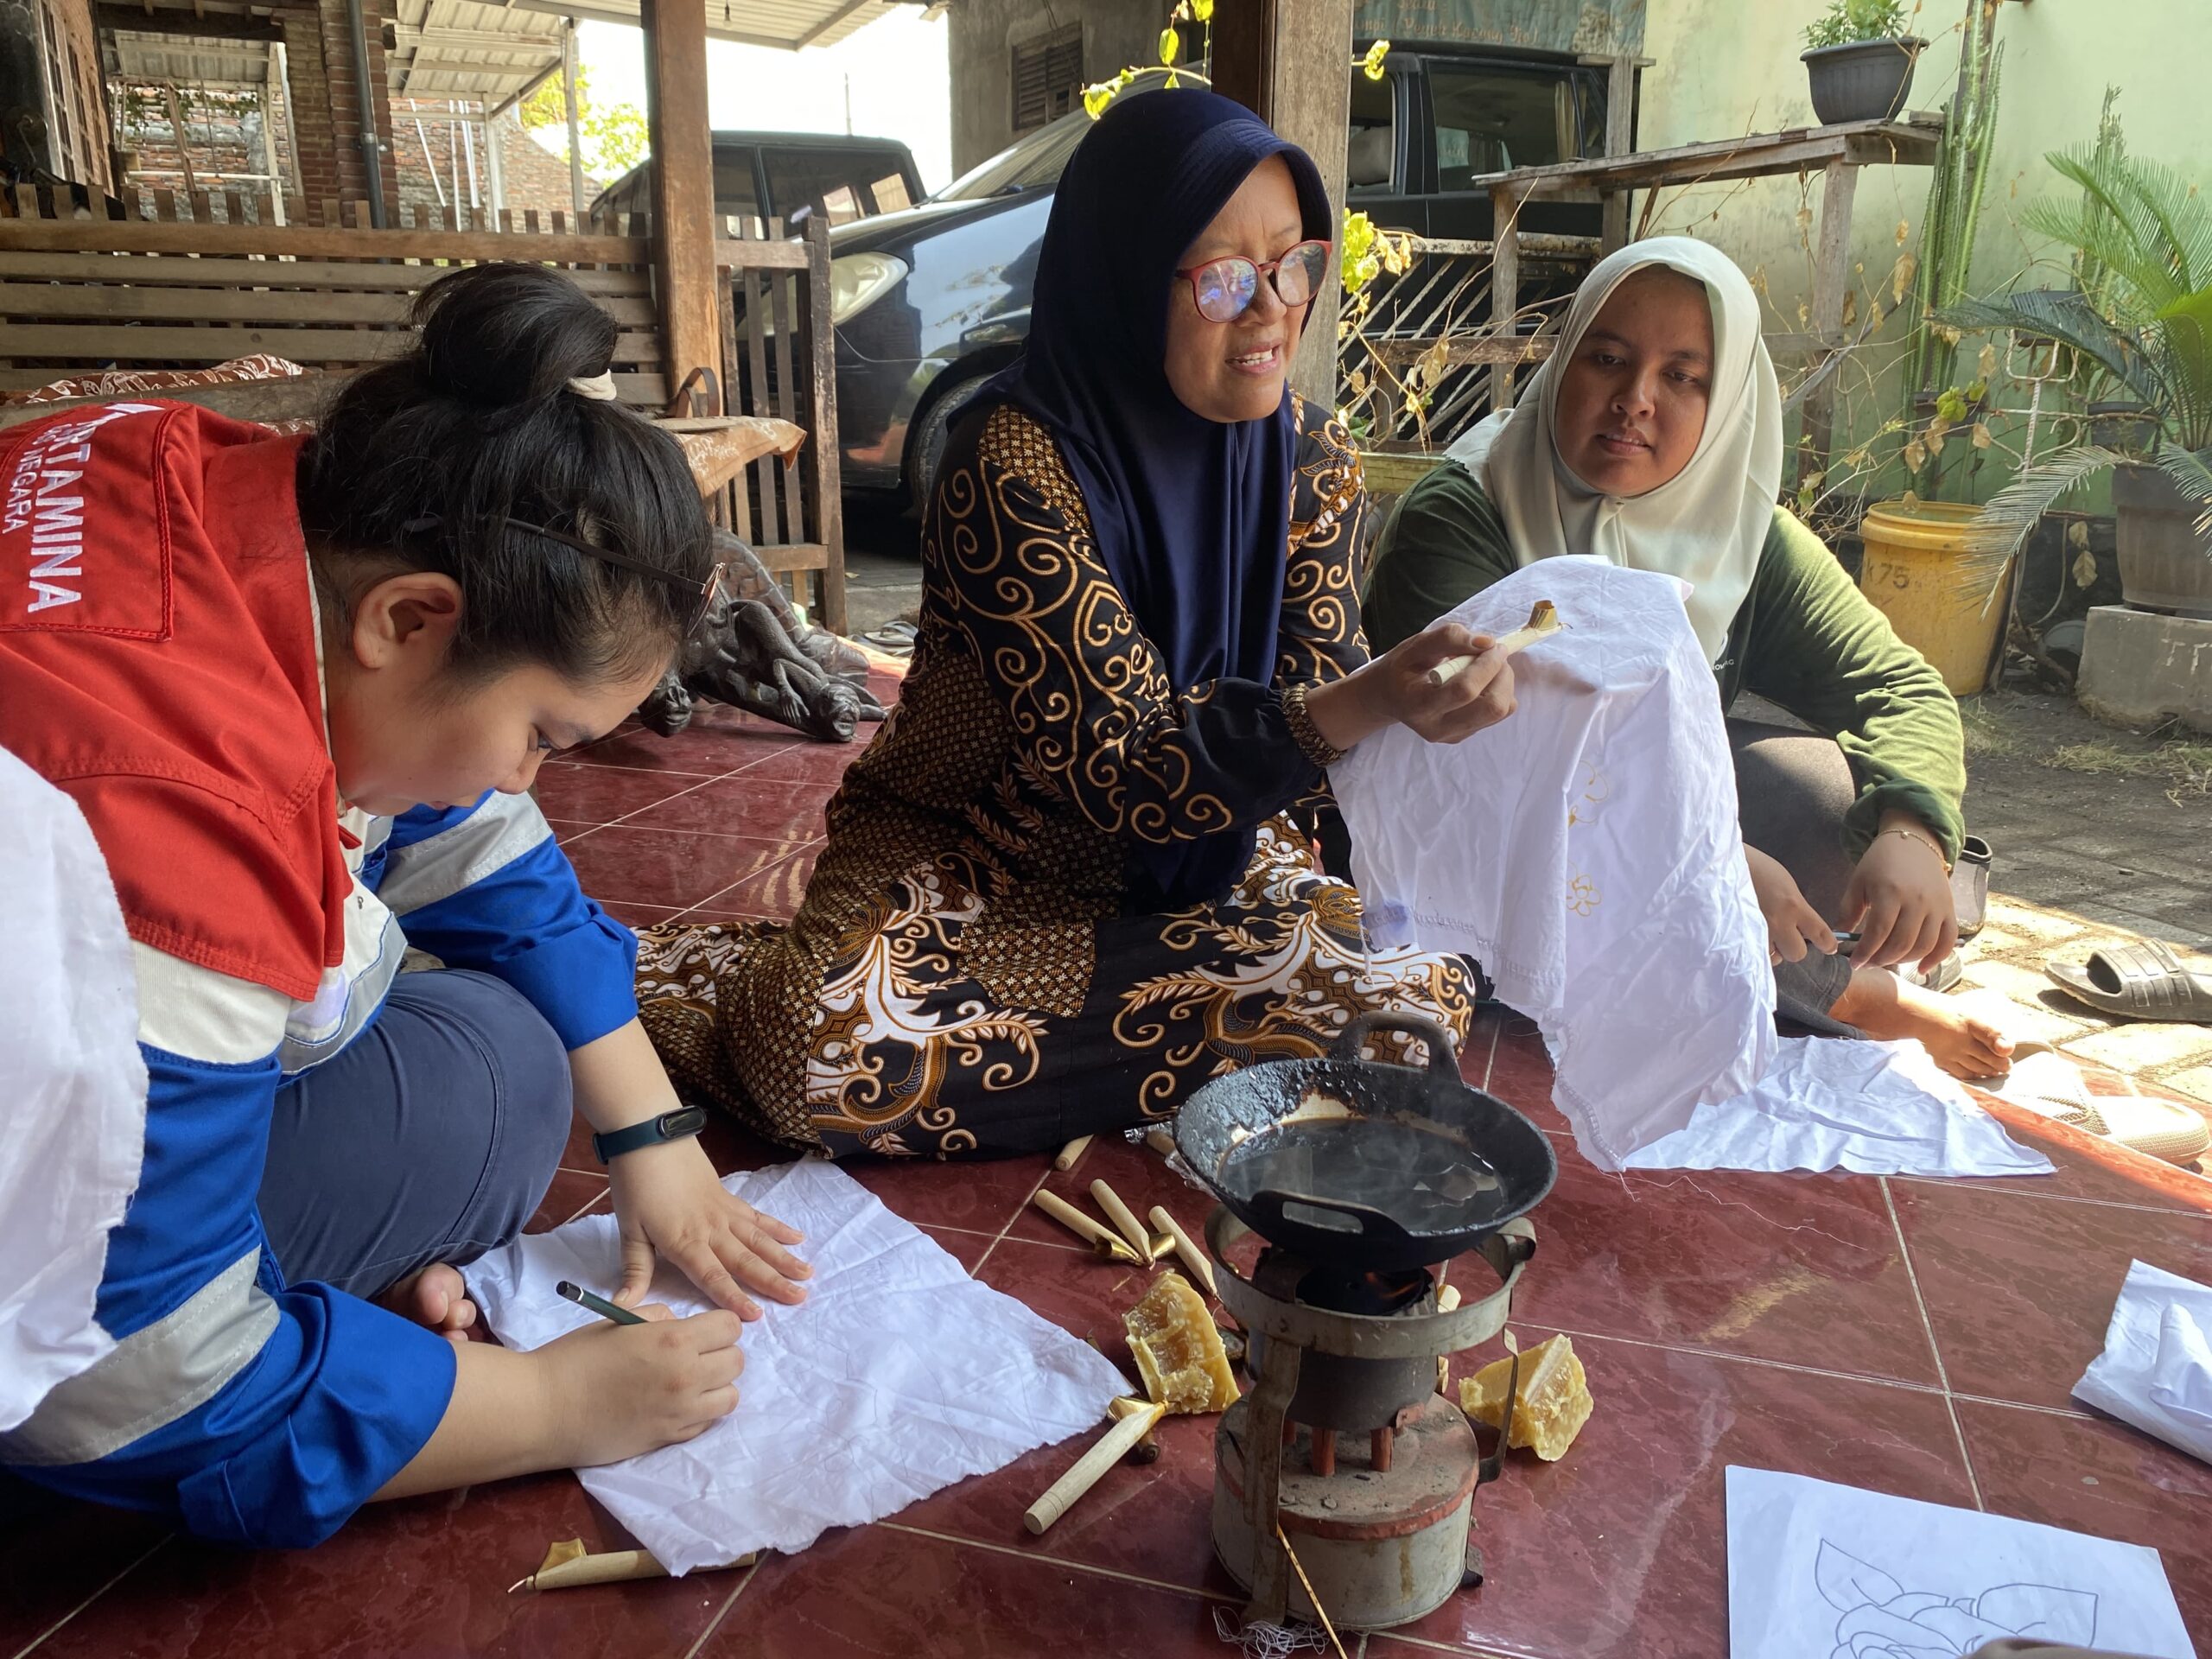 KJG menyatakan harapannya, bahwa dengan adanya sumbangan bibit dan peralatan batik ini, dapat memberikan manfaat kepada warga di Semarang dan berkontribusi dalam pengelolaan lingkungan